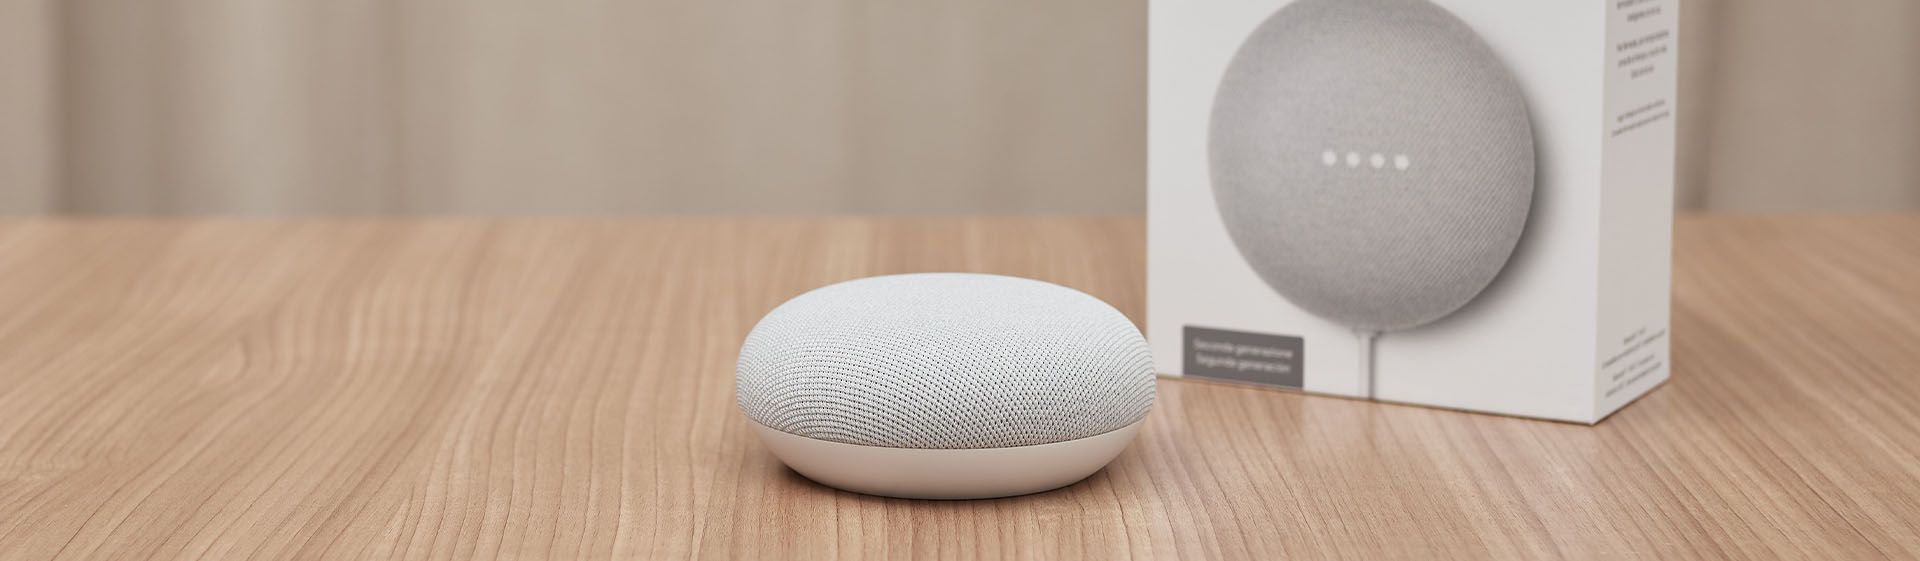 Google Nest Mini: como funciona a caixa de som inteligente do Google?